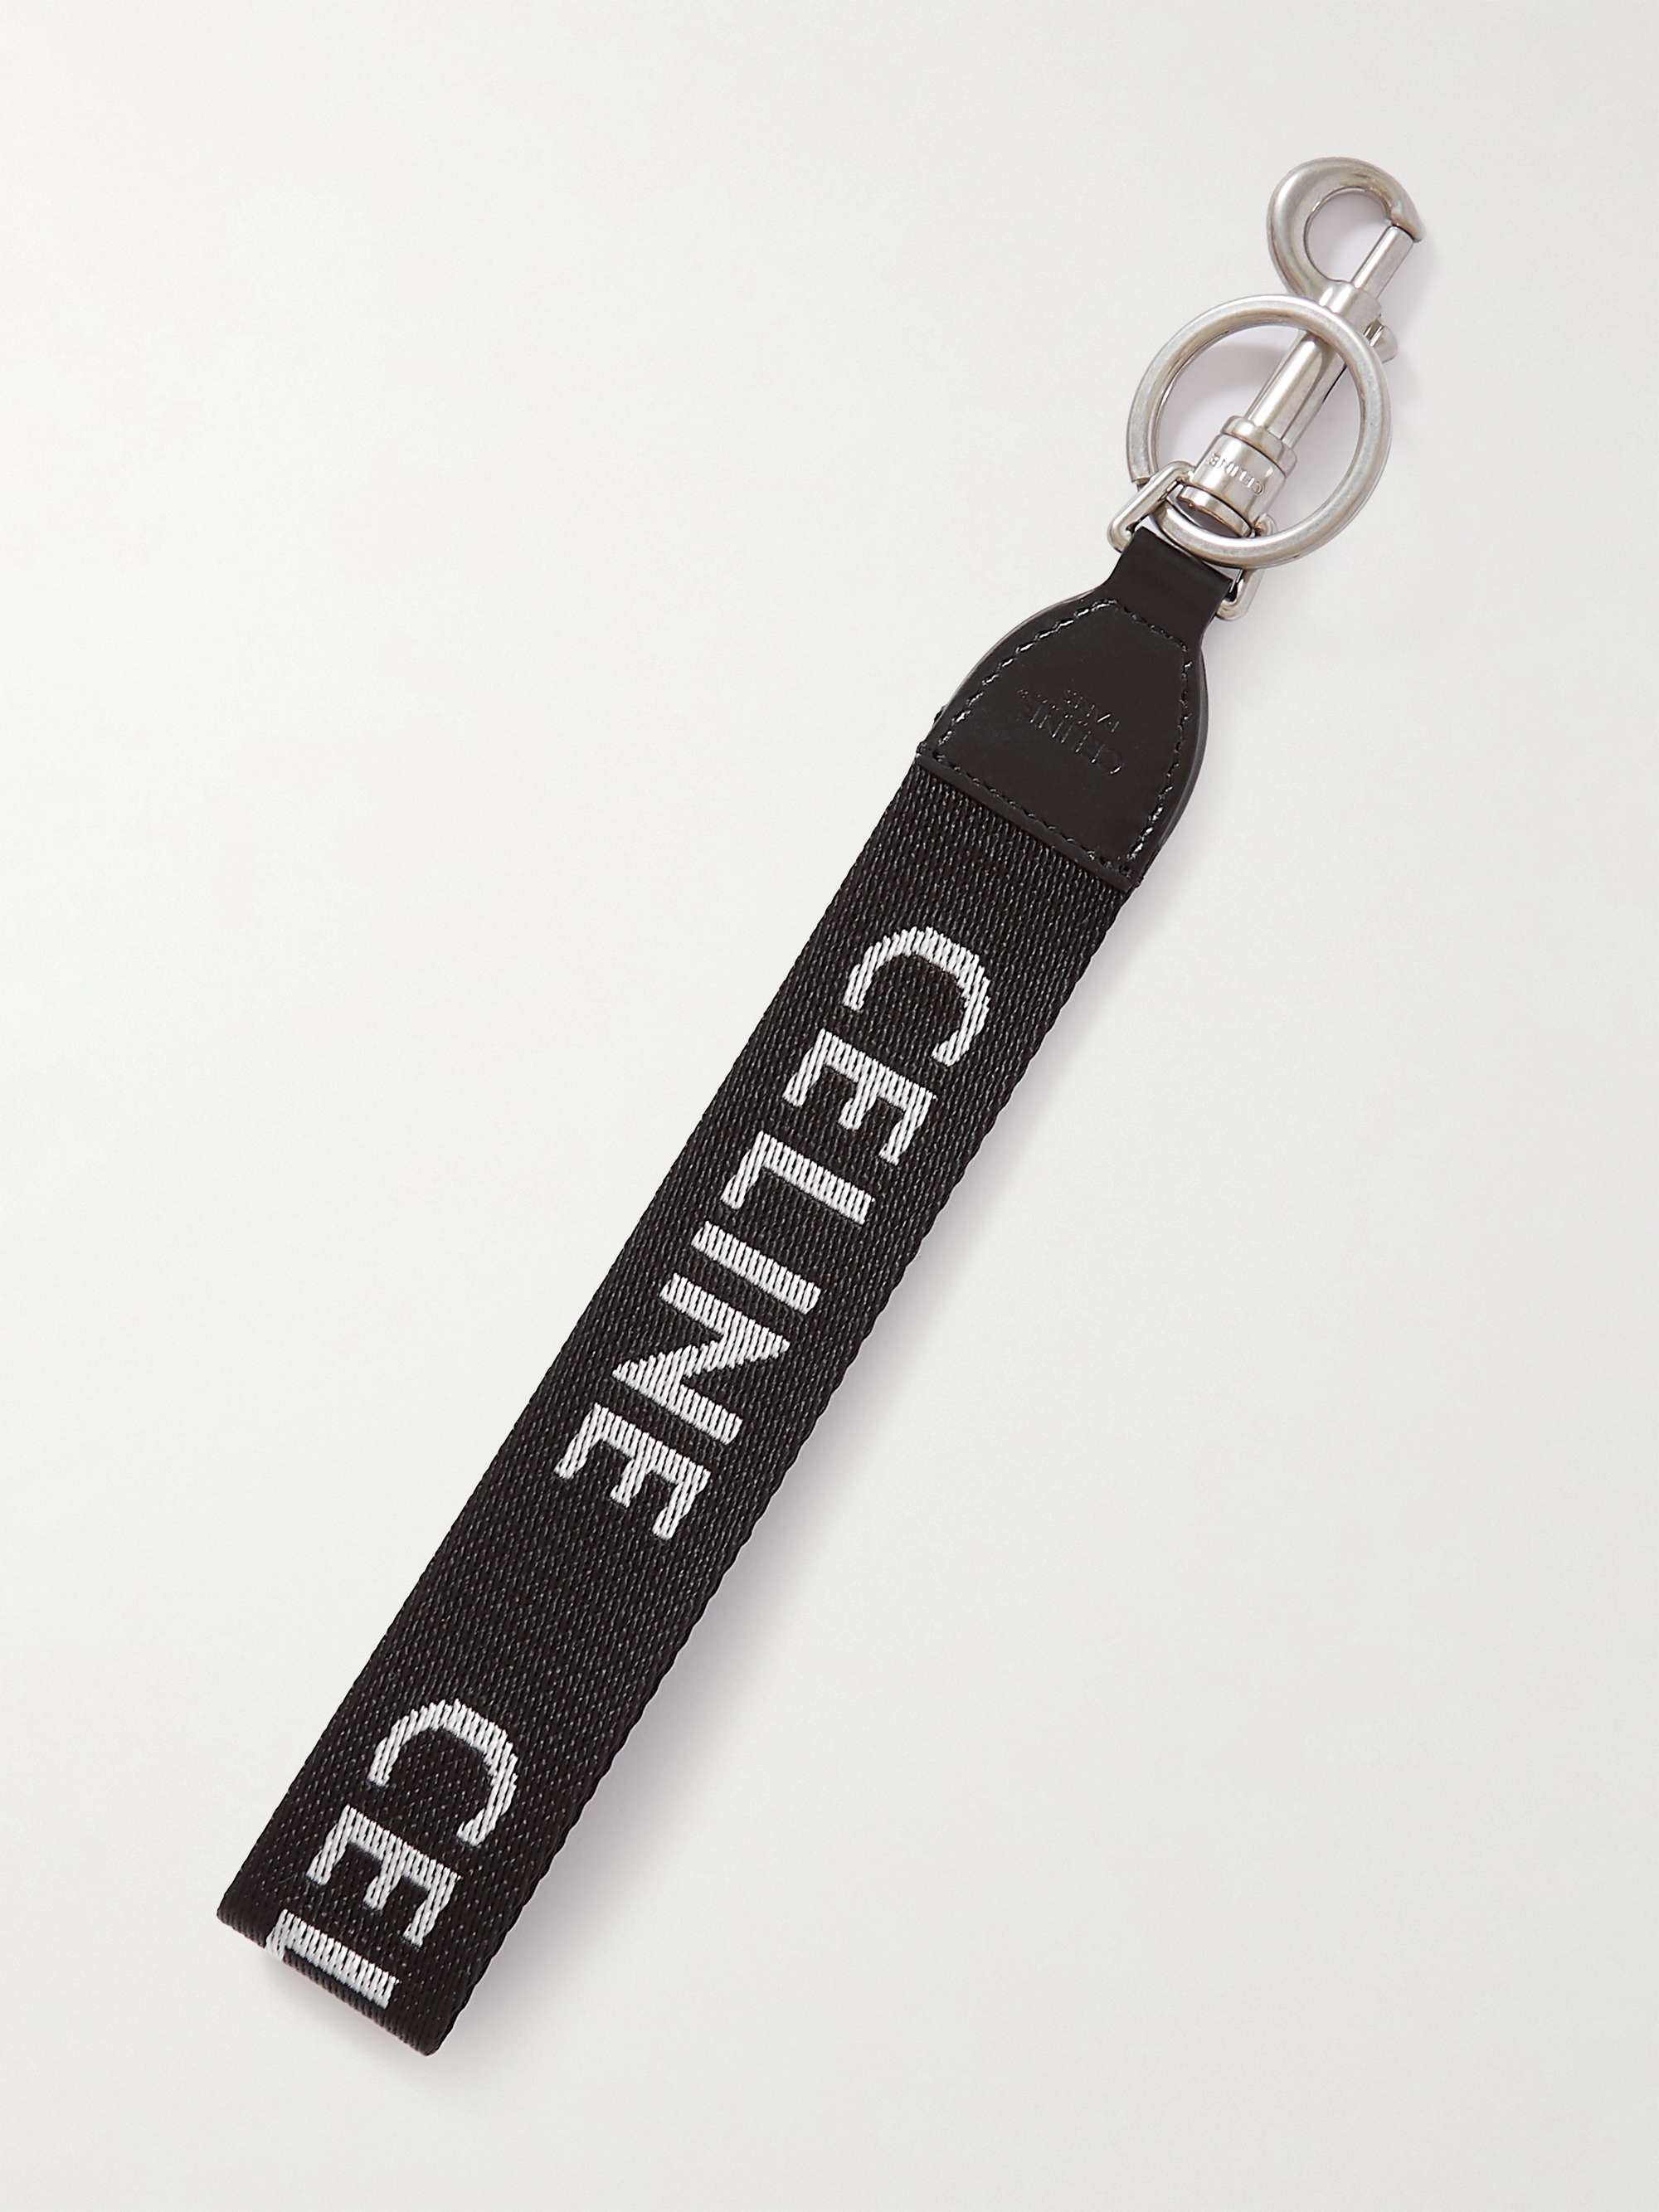 CELINE HOMME Leather-Trimmed Logo-Print Nylon Key Ring for Men